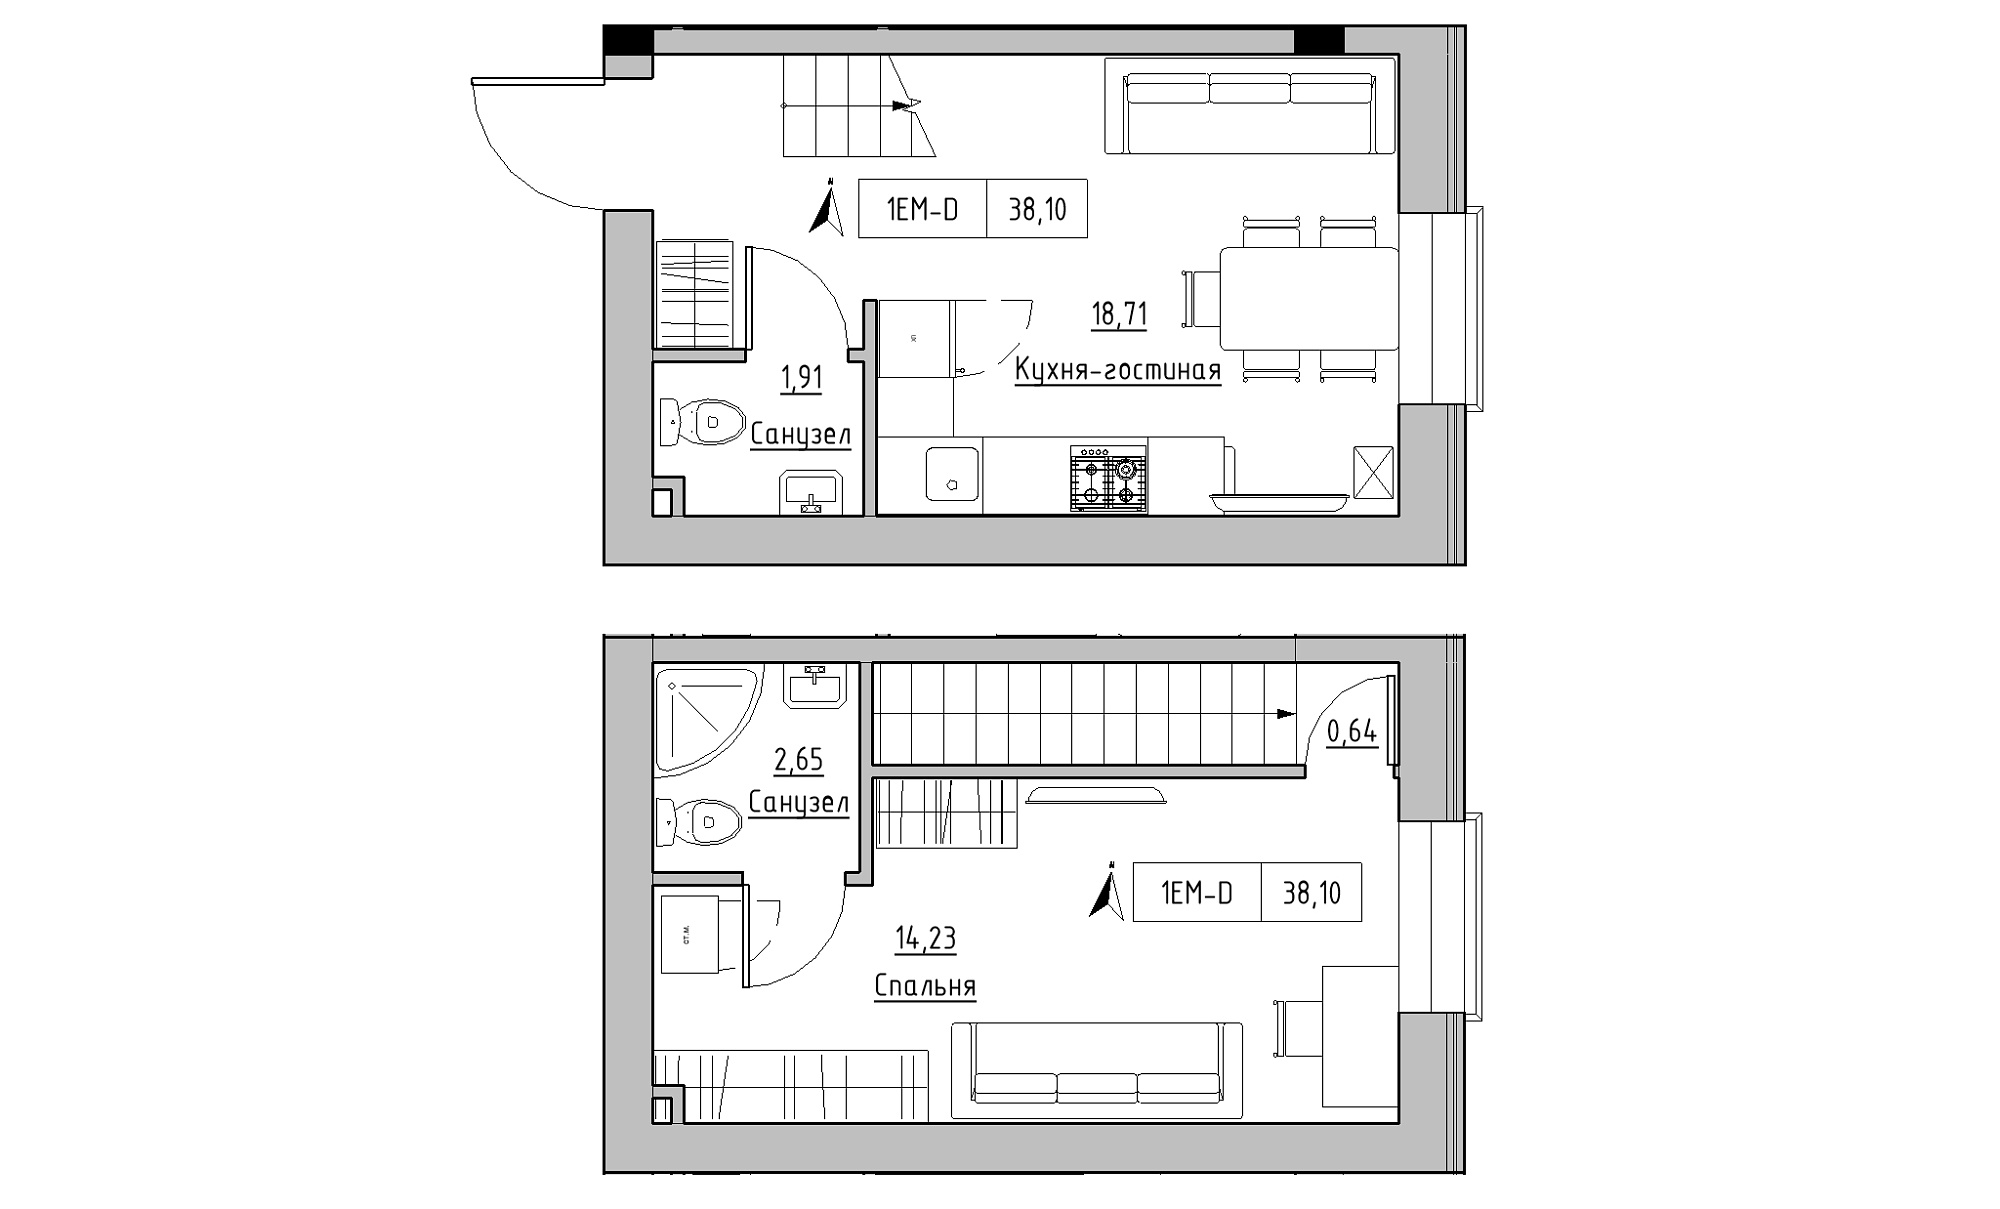 Planning 2-lvl flats area 38.1m2, KS-023-03/0007.